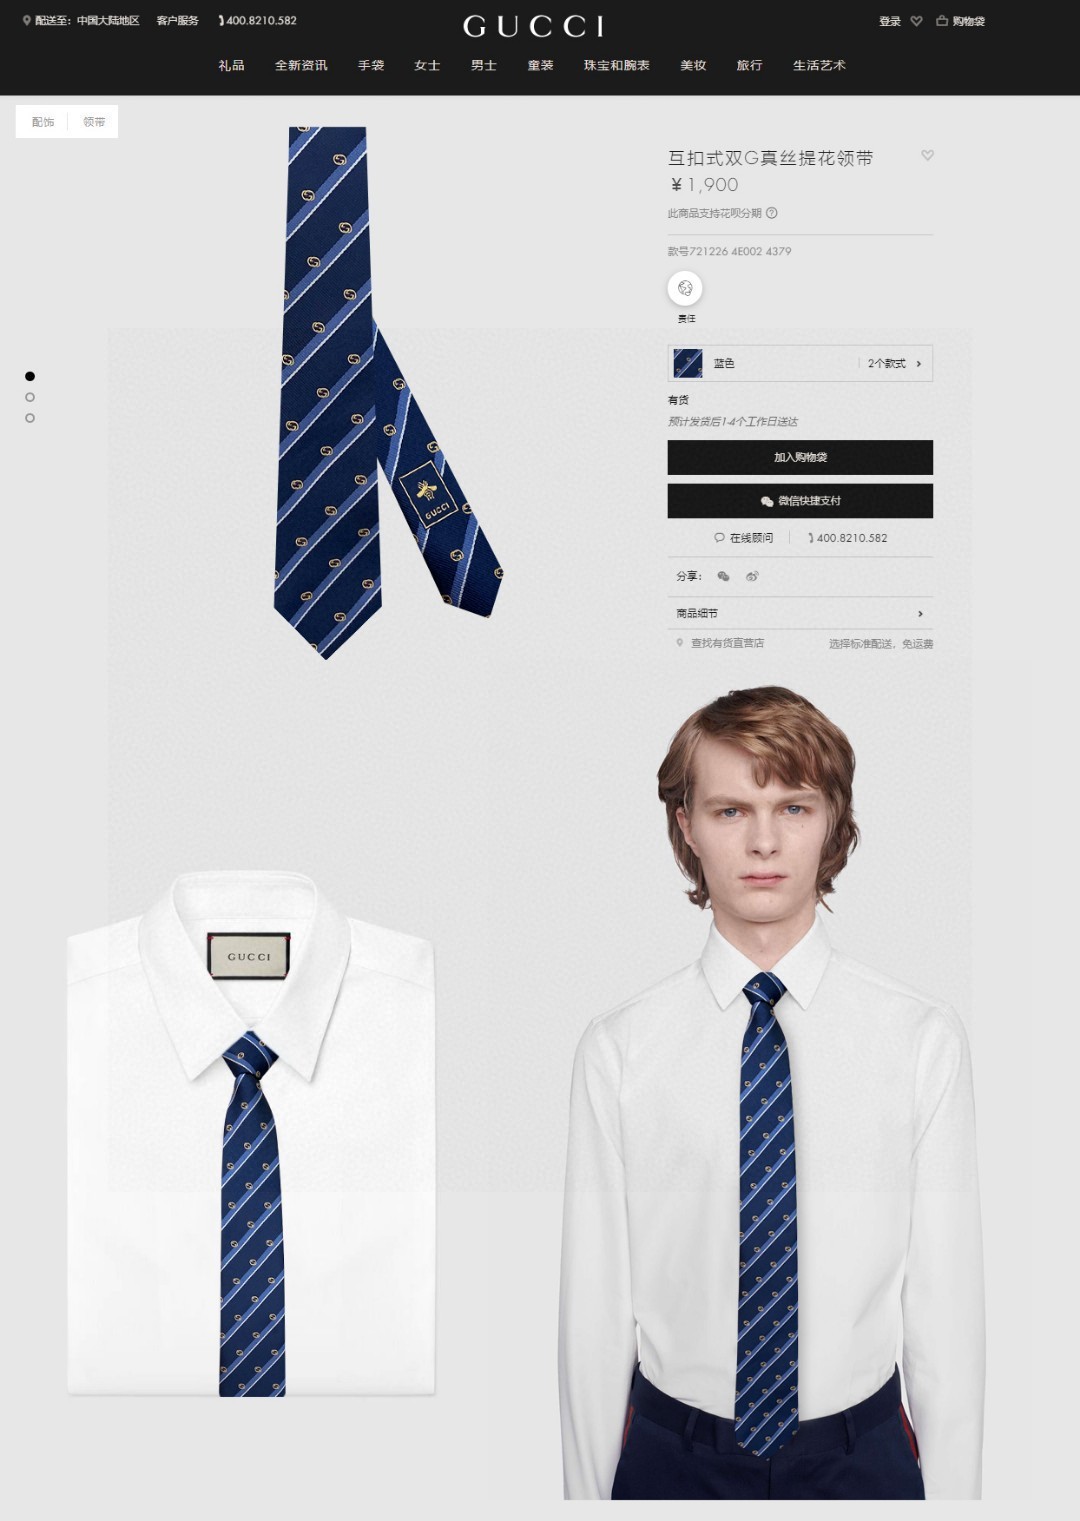 特价G家专柜新款双G条纹印花领带男士领带稀有采用经典小GLOGO提花展现精湛手工与时尚优雅的理想选择这款